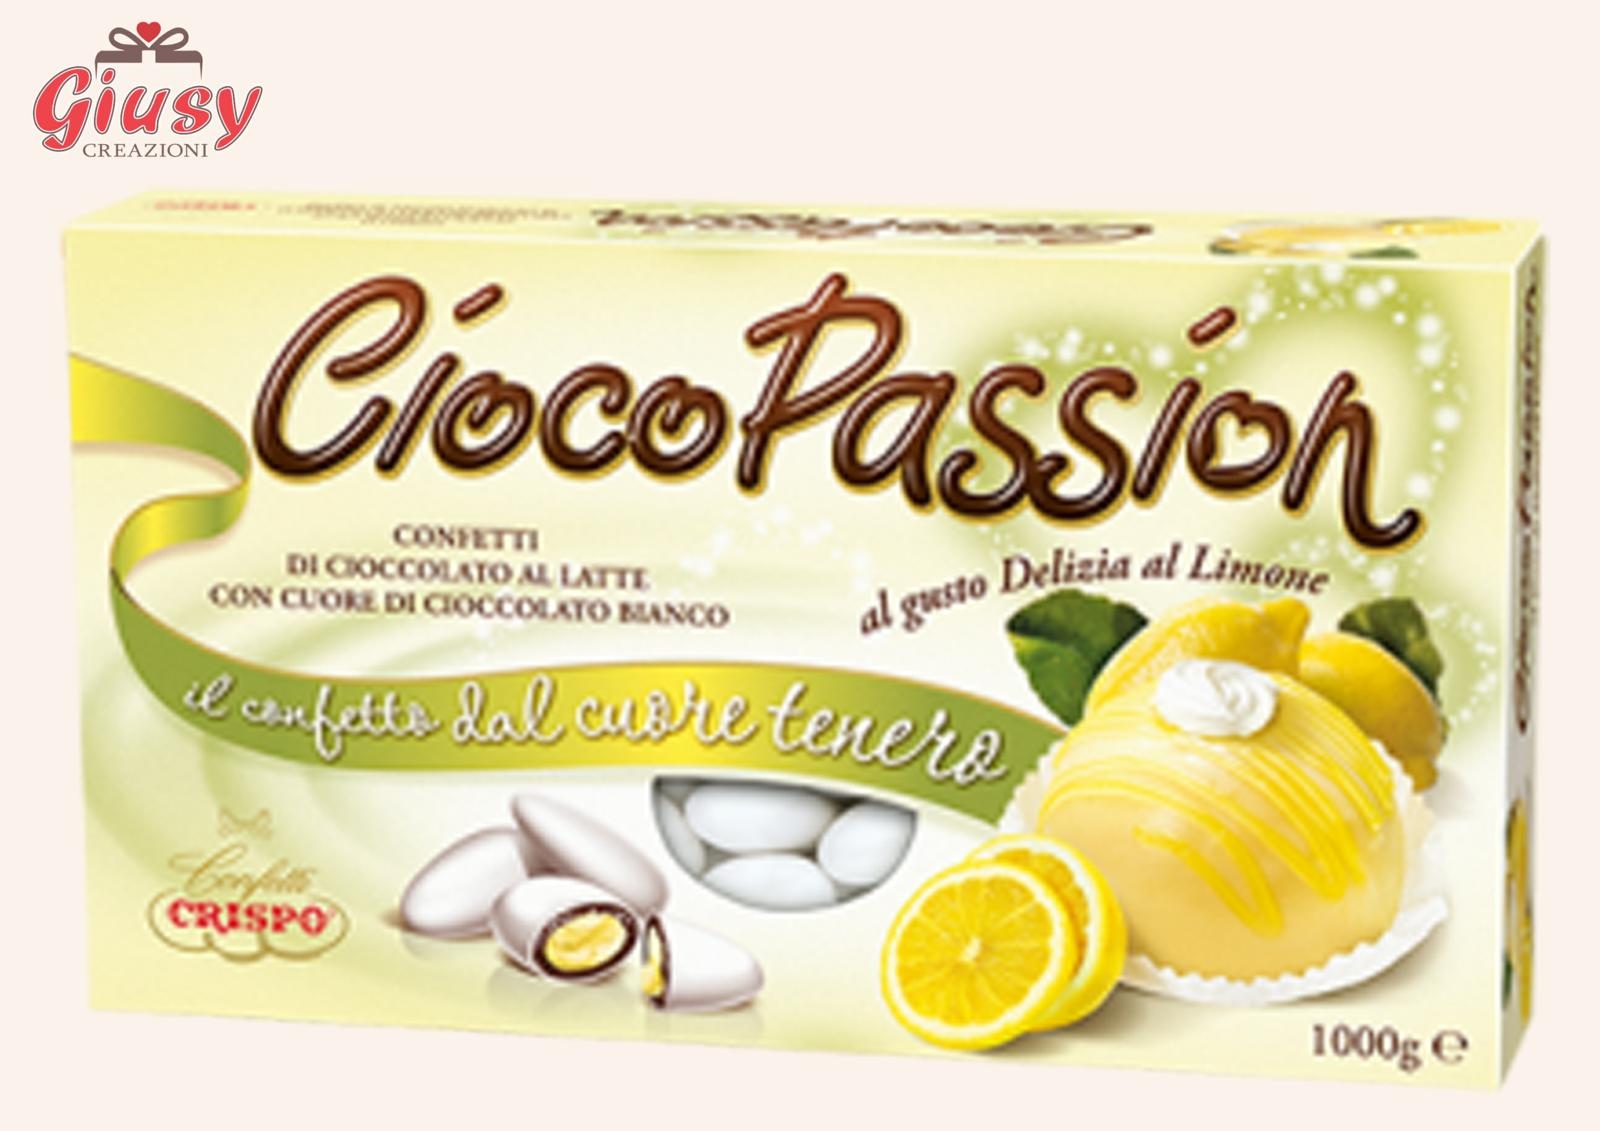 Confetti CiocoPassion Confezione 1Kg Gusto Delizia Al Limone